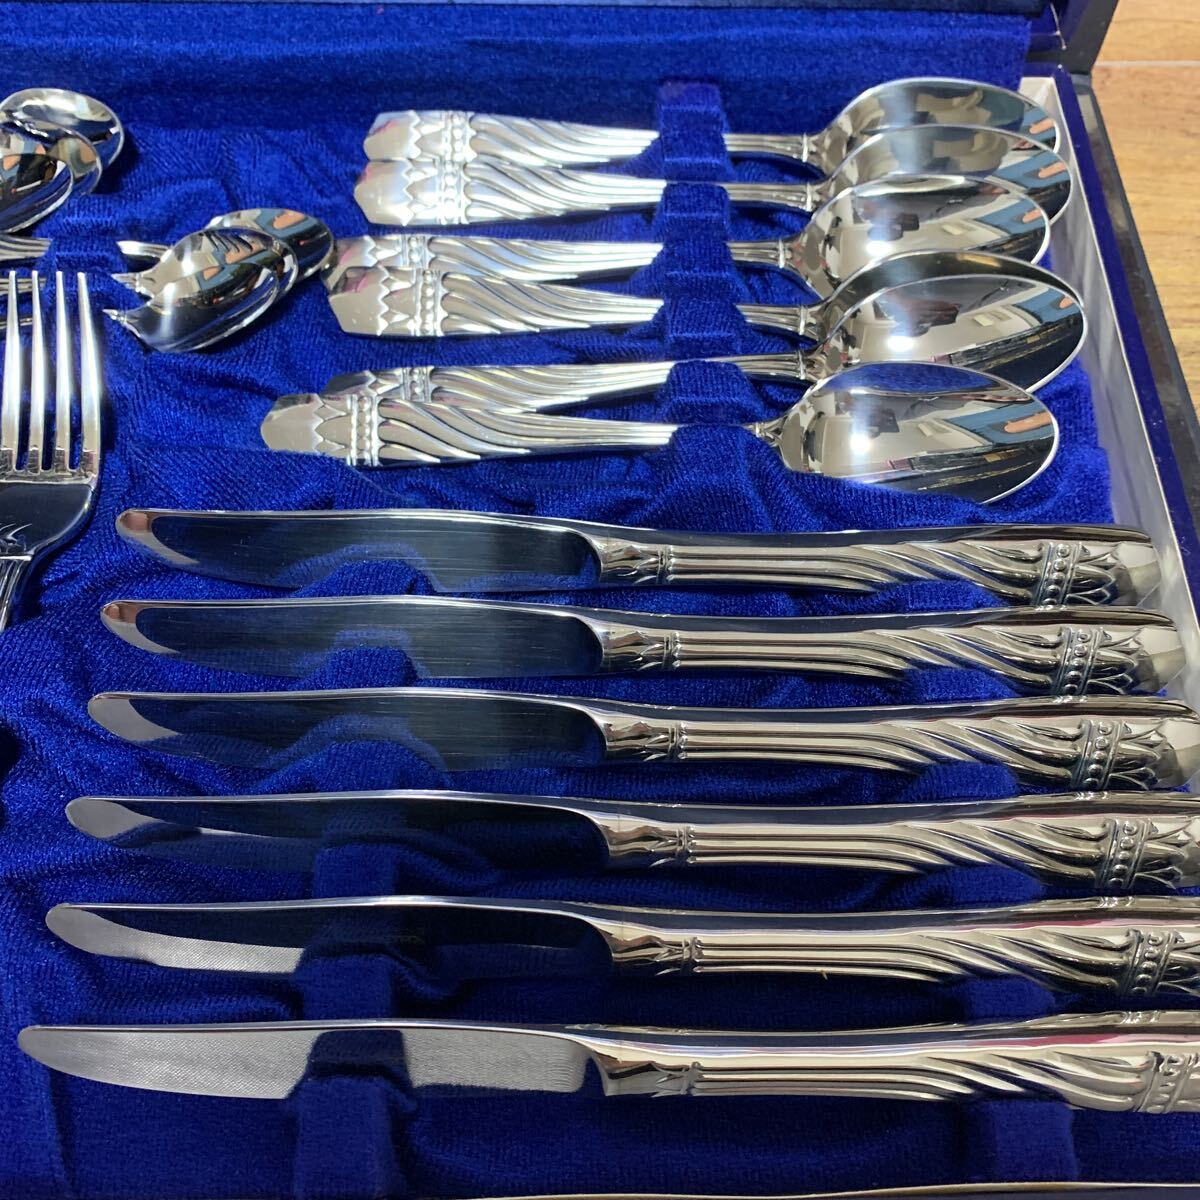 Artenon arte non AZUMAazuma cutlery set spoon Fork knife tina-6 customer 24 pcs set stainless steel 18-18